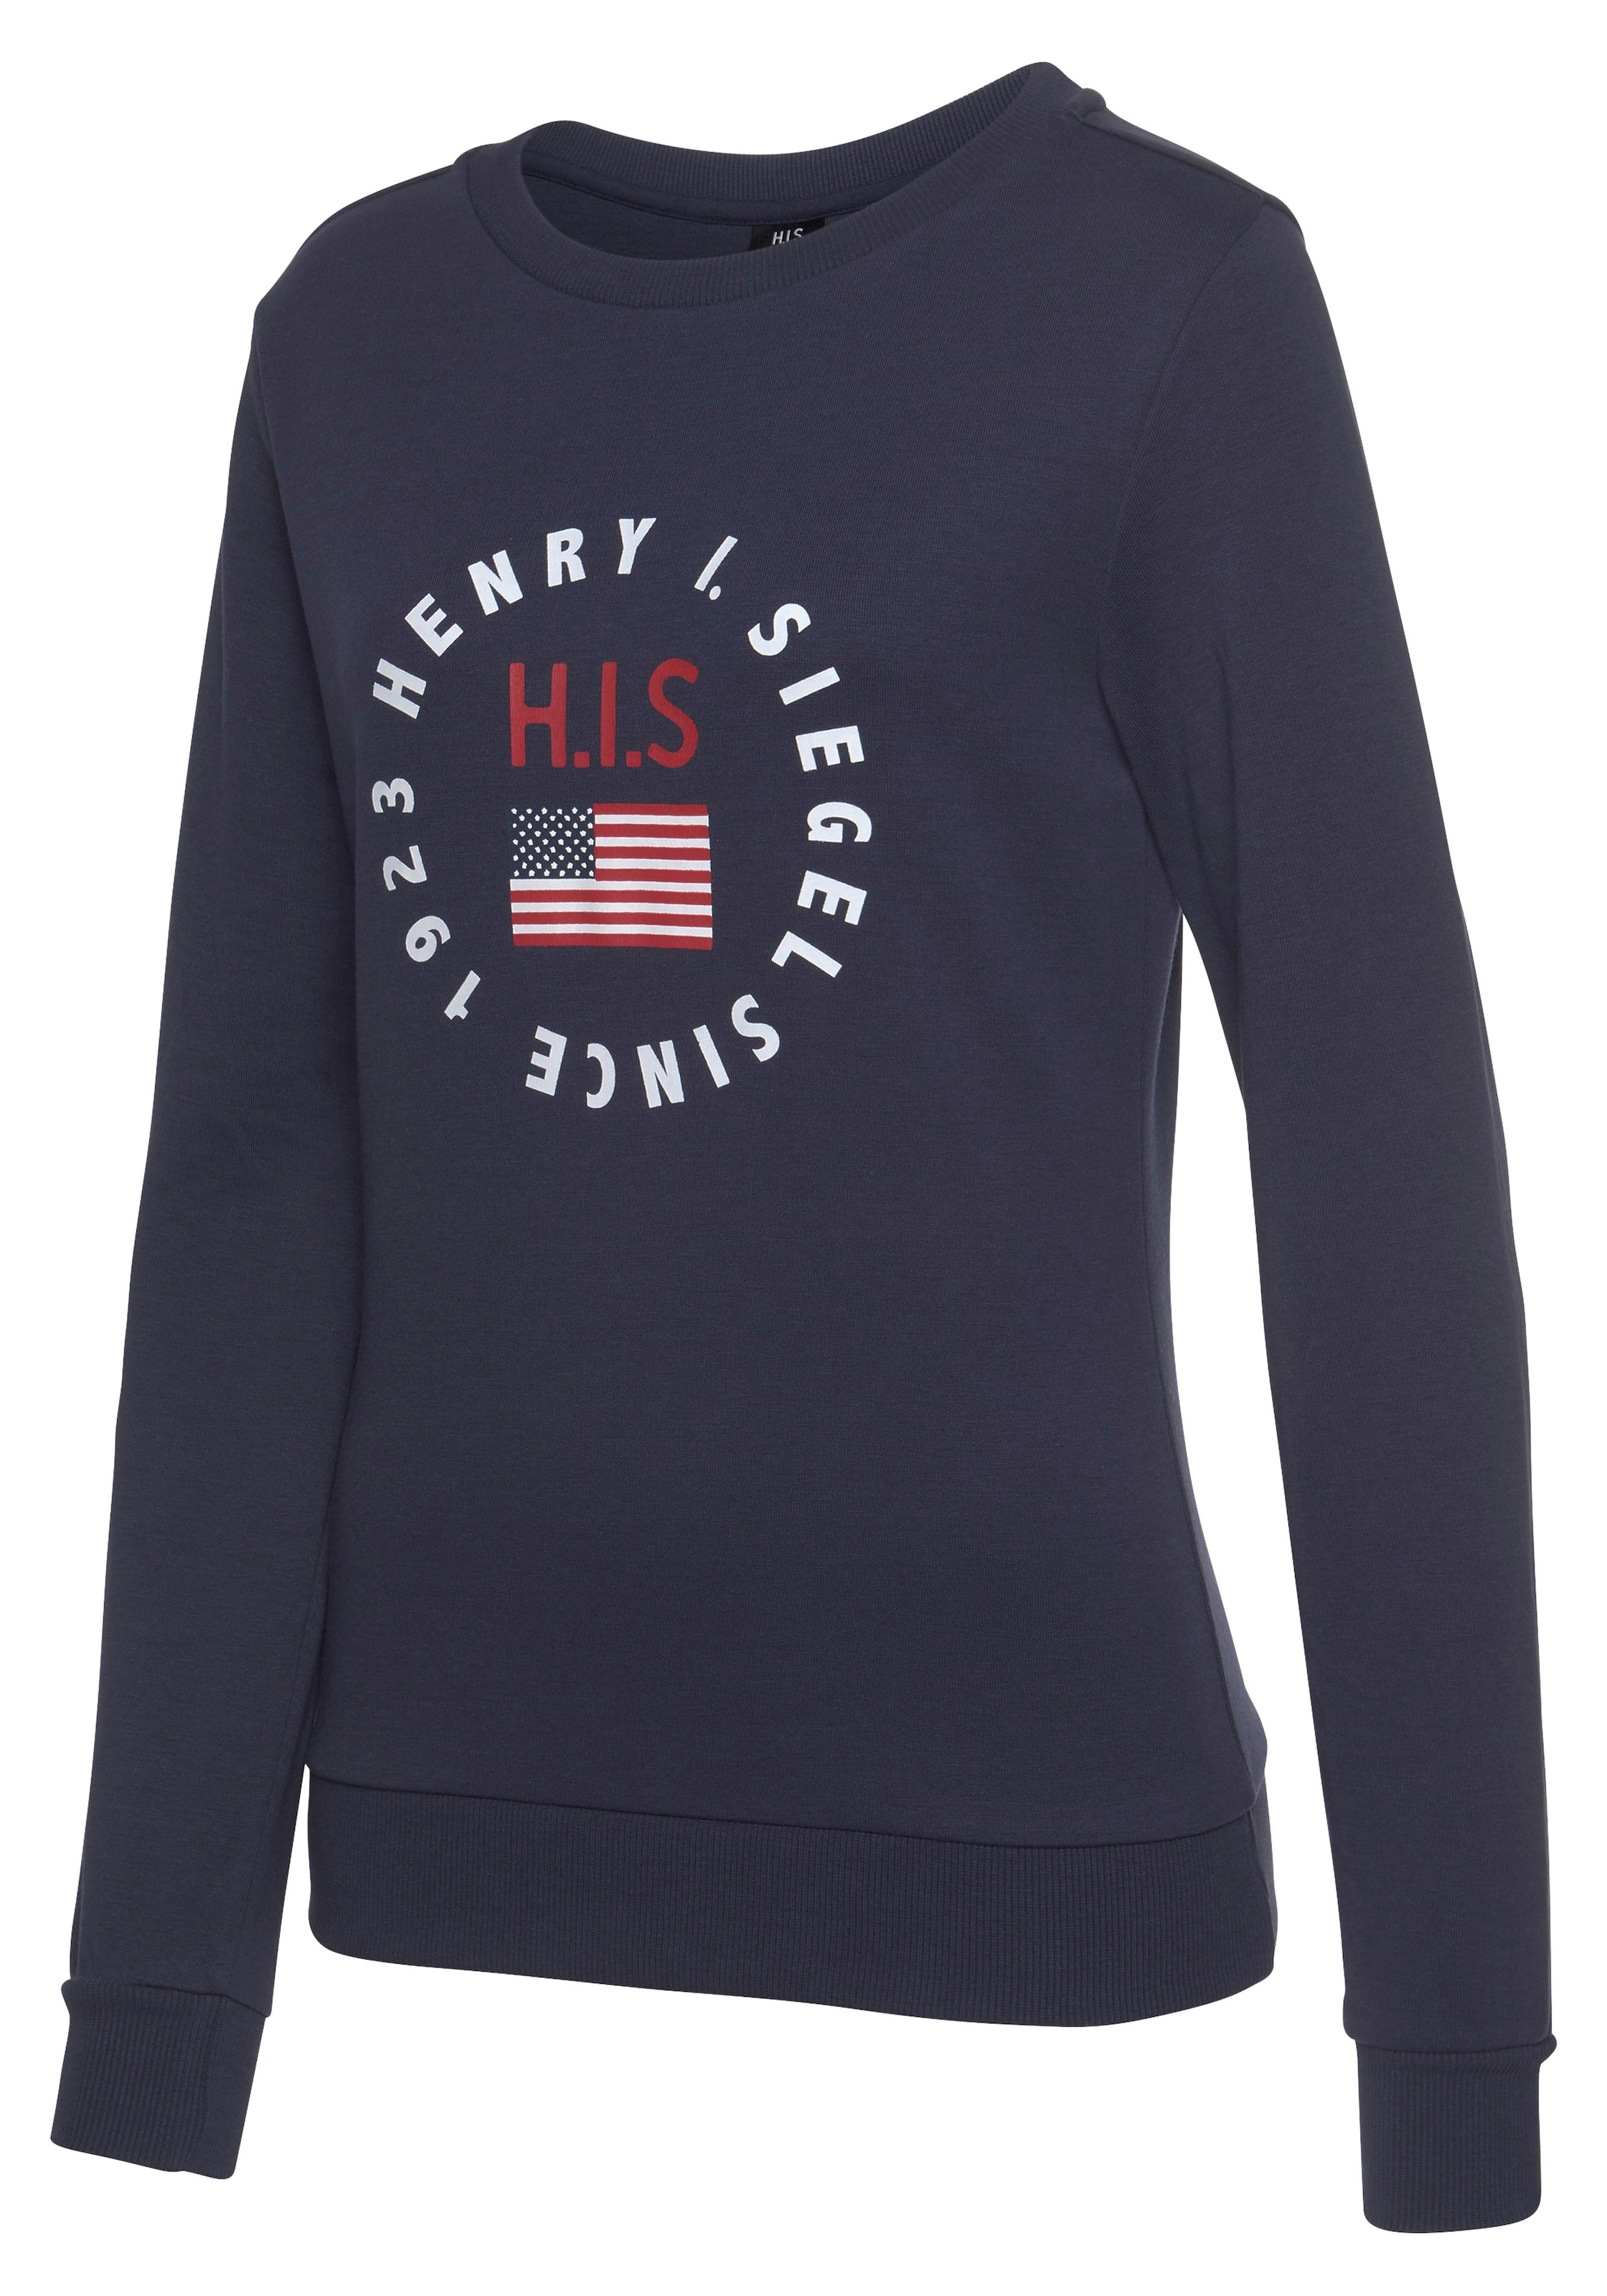 mit bestellen Logodruck jetzt Sweatshirt, H.I.S